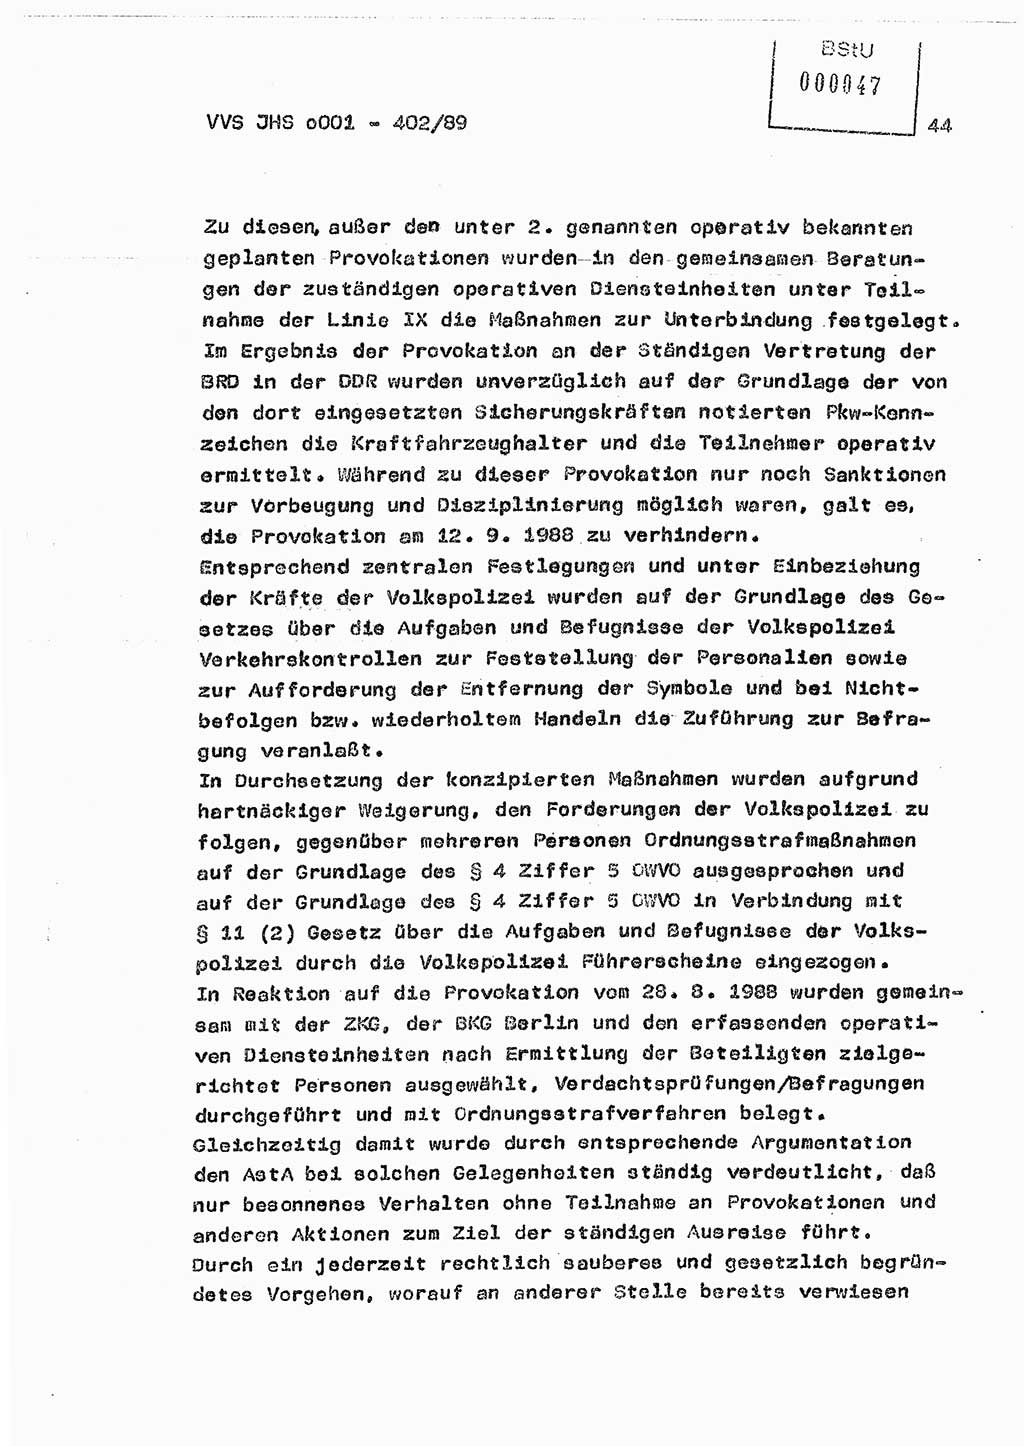 Diplomarbeit Major Günter Müller (HA Ⅸ/9), Ministerium für Staatssicherheit (MfS) [Deutsche Demokratische Republik (DDR)], Juristische Hochschule (JHS), Vertrauliche Verschlußsache (VVS) o001-402/89, Potsdam 1989, Seite 44 (Dipl.-Arb. MfS DDR JHS VVS o001-402/89 1989, S. 44)